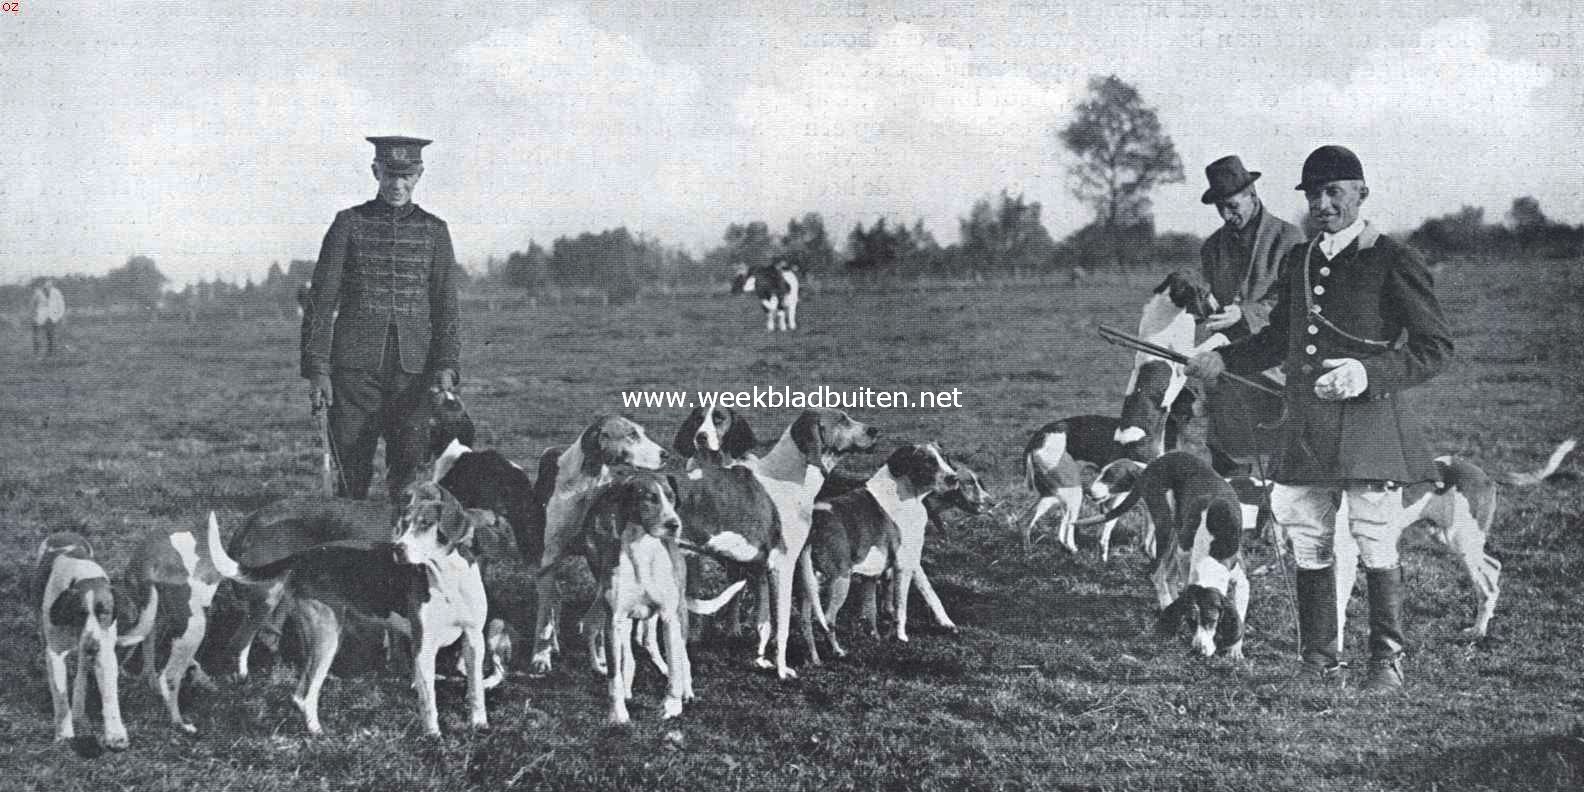 De Koninkl. Nederlandsche Jachtvereeniging en het jachtrijden achter de honden. De honden na de jacht. Van links naar rechts: jhr. De Blocq van Scheltinga (whip), de heer Winter (dierenarts der K.N.J.V.) en de kennelhuntsman Champion